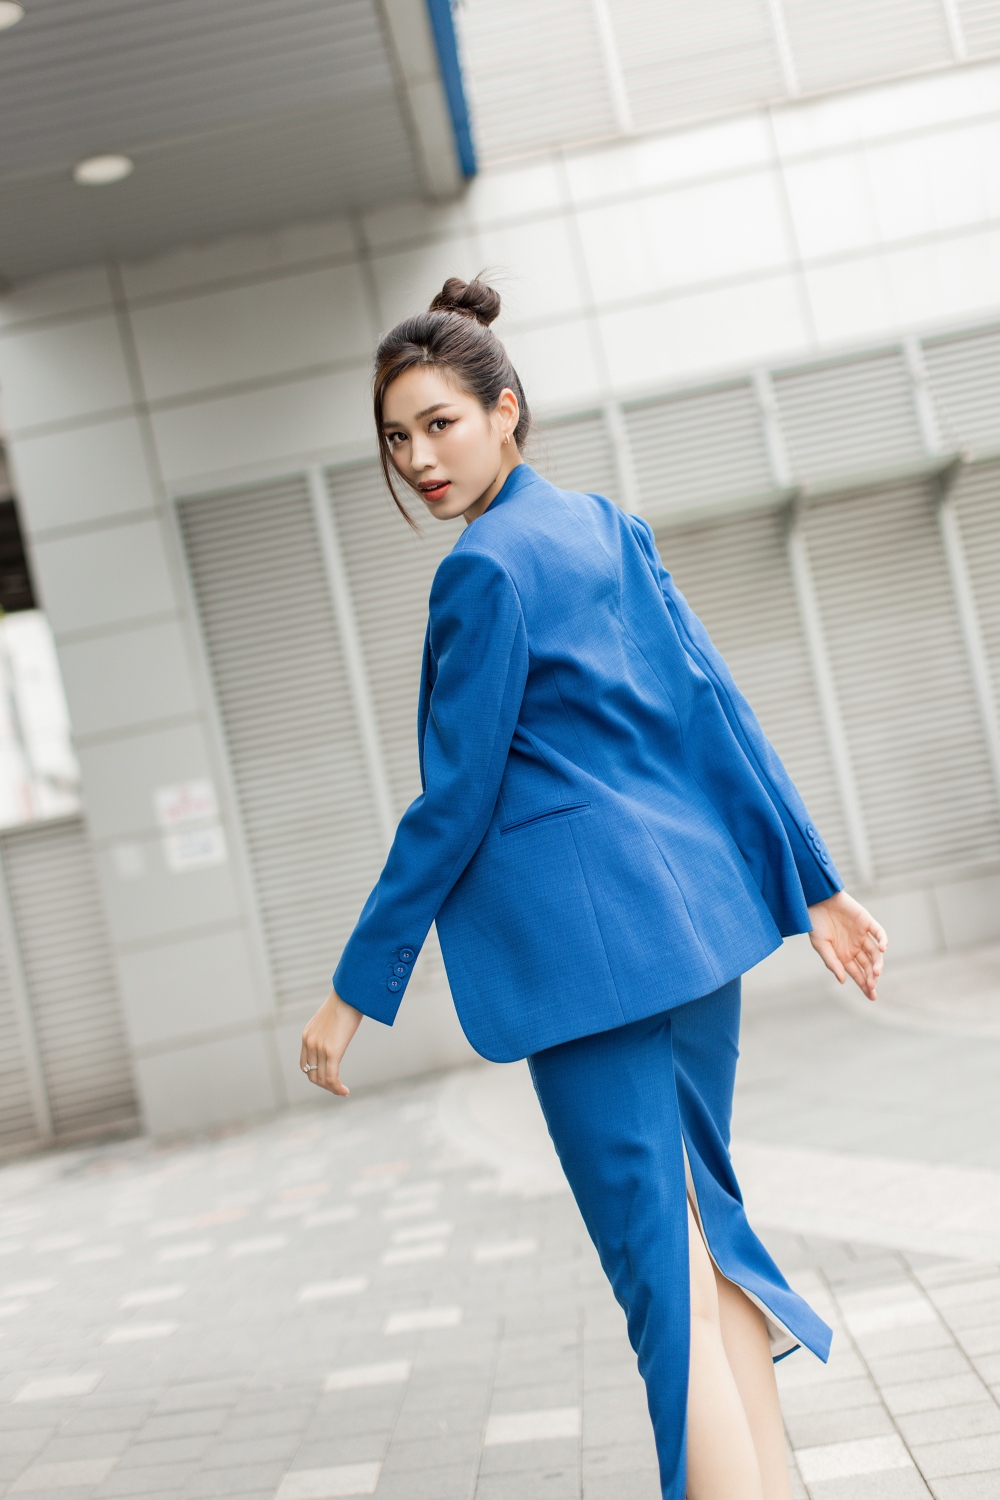 Hoa hậu Đỗ Hà xuống phố Hàn Quốc với phong cách doanh nhân - Ảnh 2.